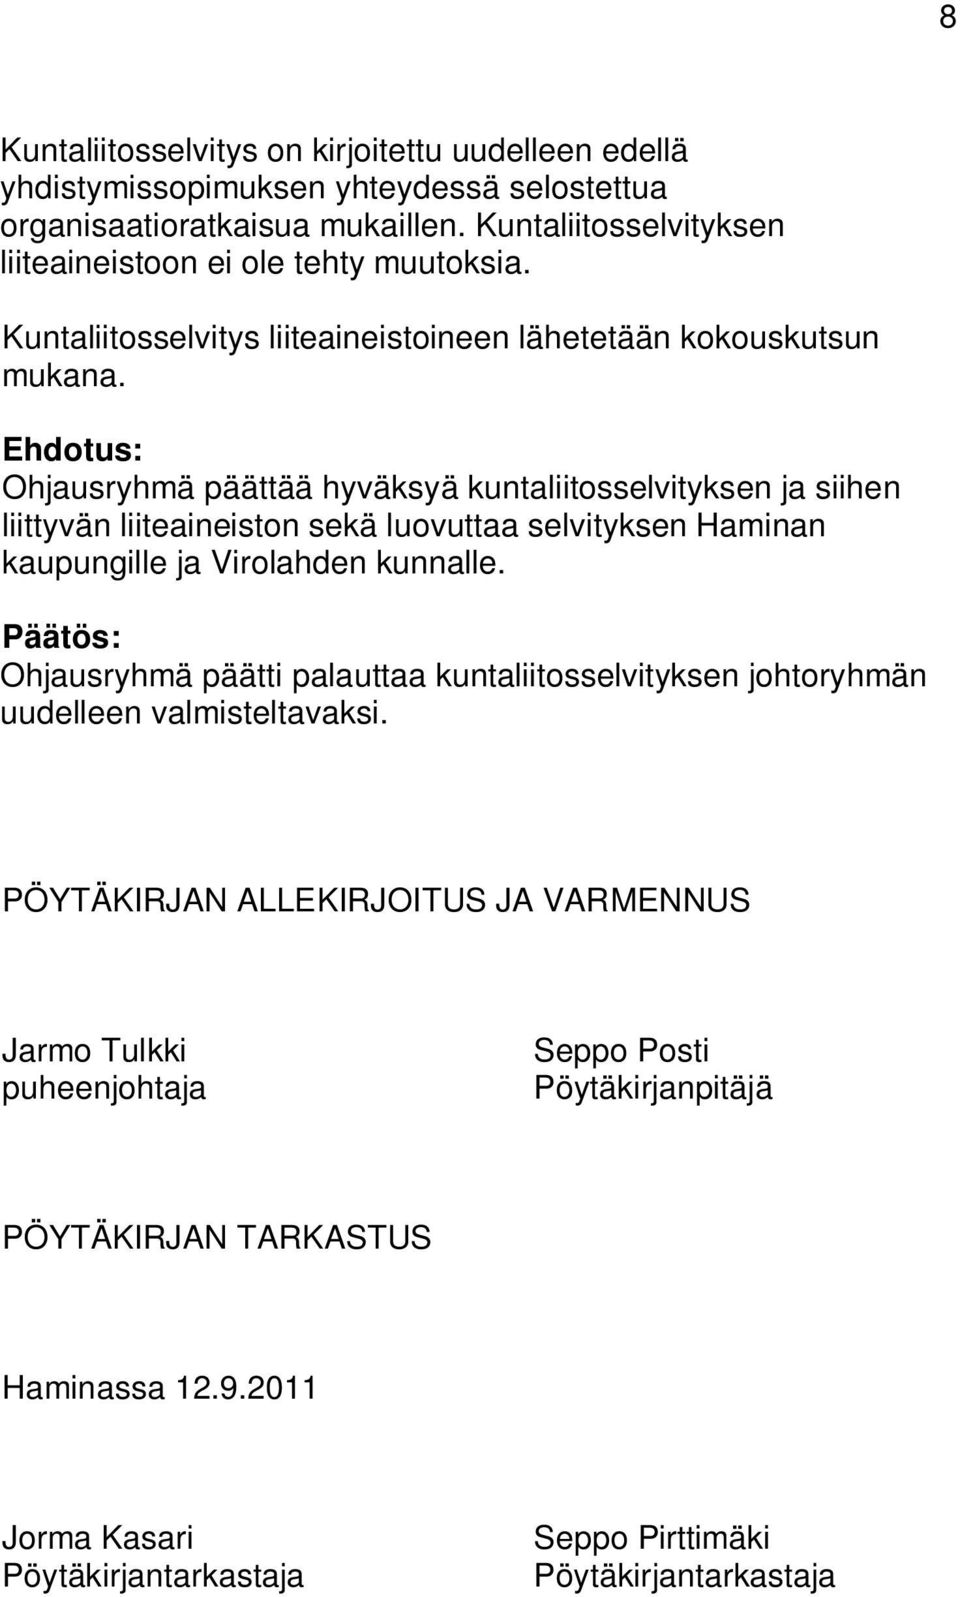 Ehdotus: Ohjausryhmä päättää hyväksyä kuntaliitosselvityksen ja siihen liittyvän liiteaineiston sekä luovuttaa selvityksen Haminan kaupungille ja Virolahden kunnalle.